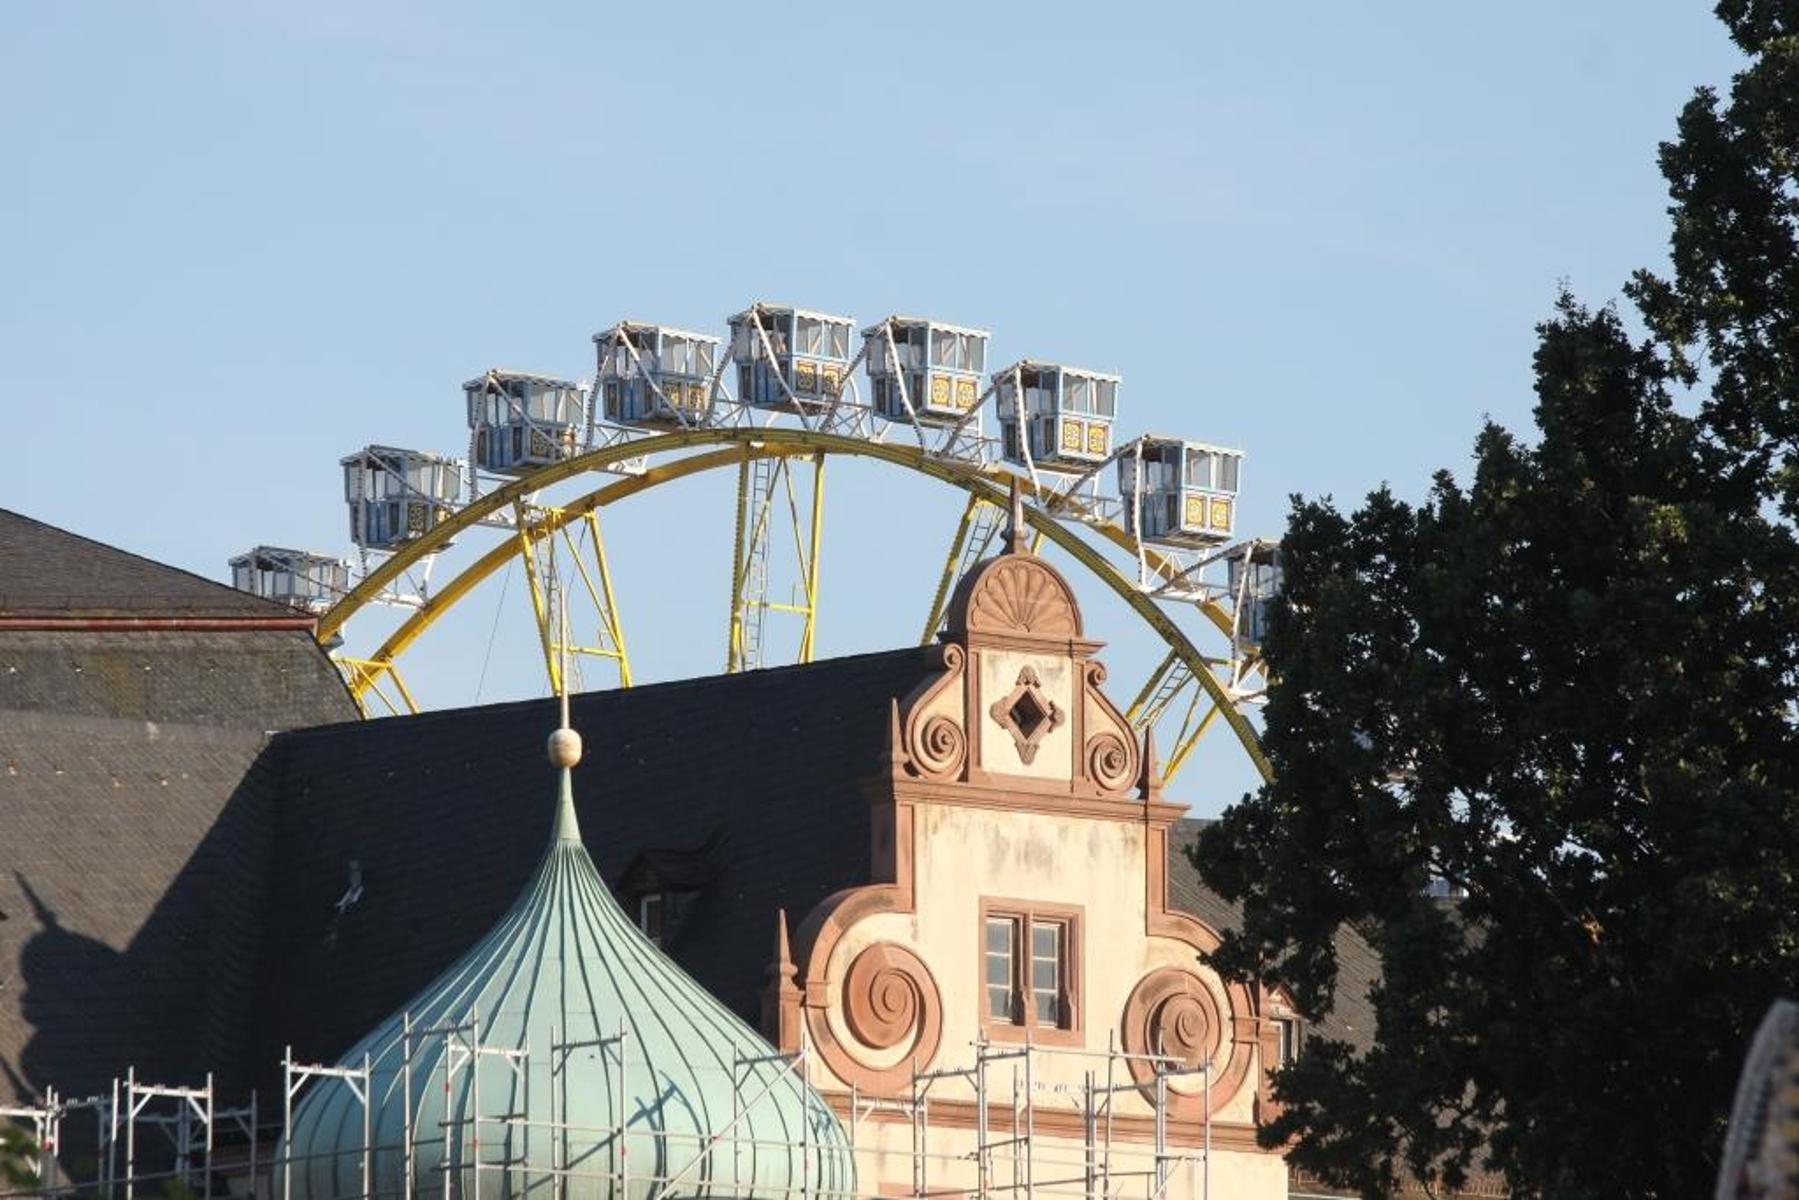 Der Heimatverein Darmstädter Heiner e.V. organisiert das seit 1951 statt findende Darmstädter Heinerfest, das immer am ersten Juli-Wochenende statt findet. Das Heinerfest ist eines der vielfältigsten Innenstadtfest Deutschlands und bietet in der Innenstadt rund um das Schloss ein vielfältiges ...